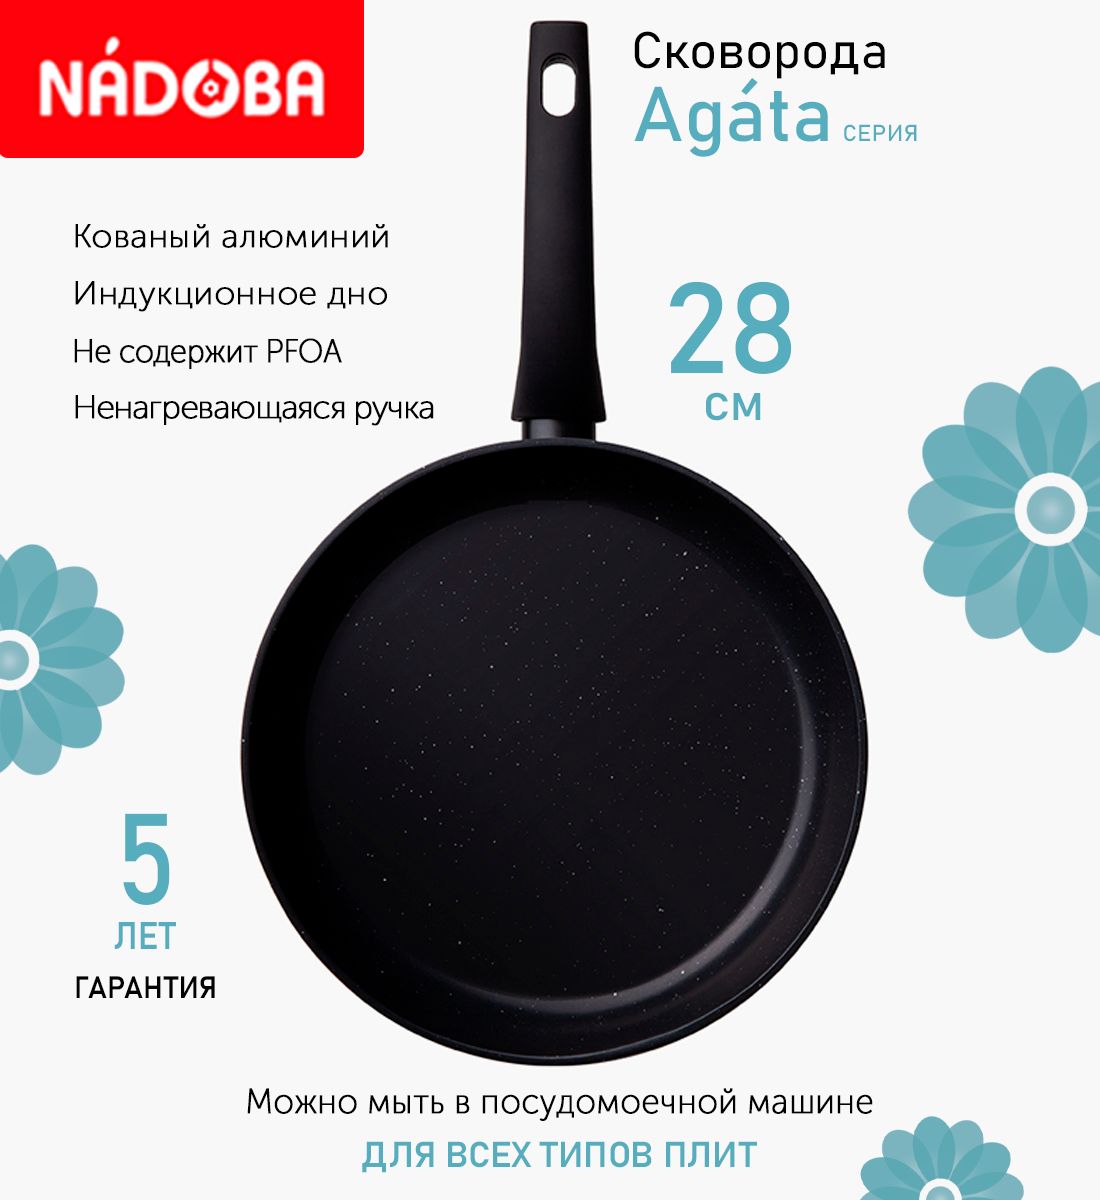 Сковорода с антипригарным покрытием 28 см Nadoba Agata, индукция